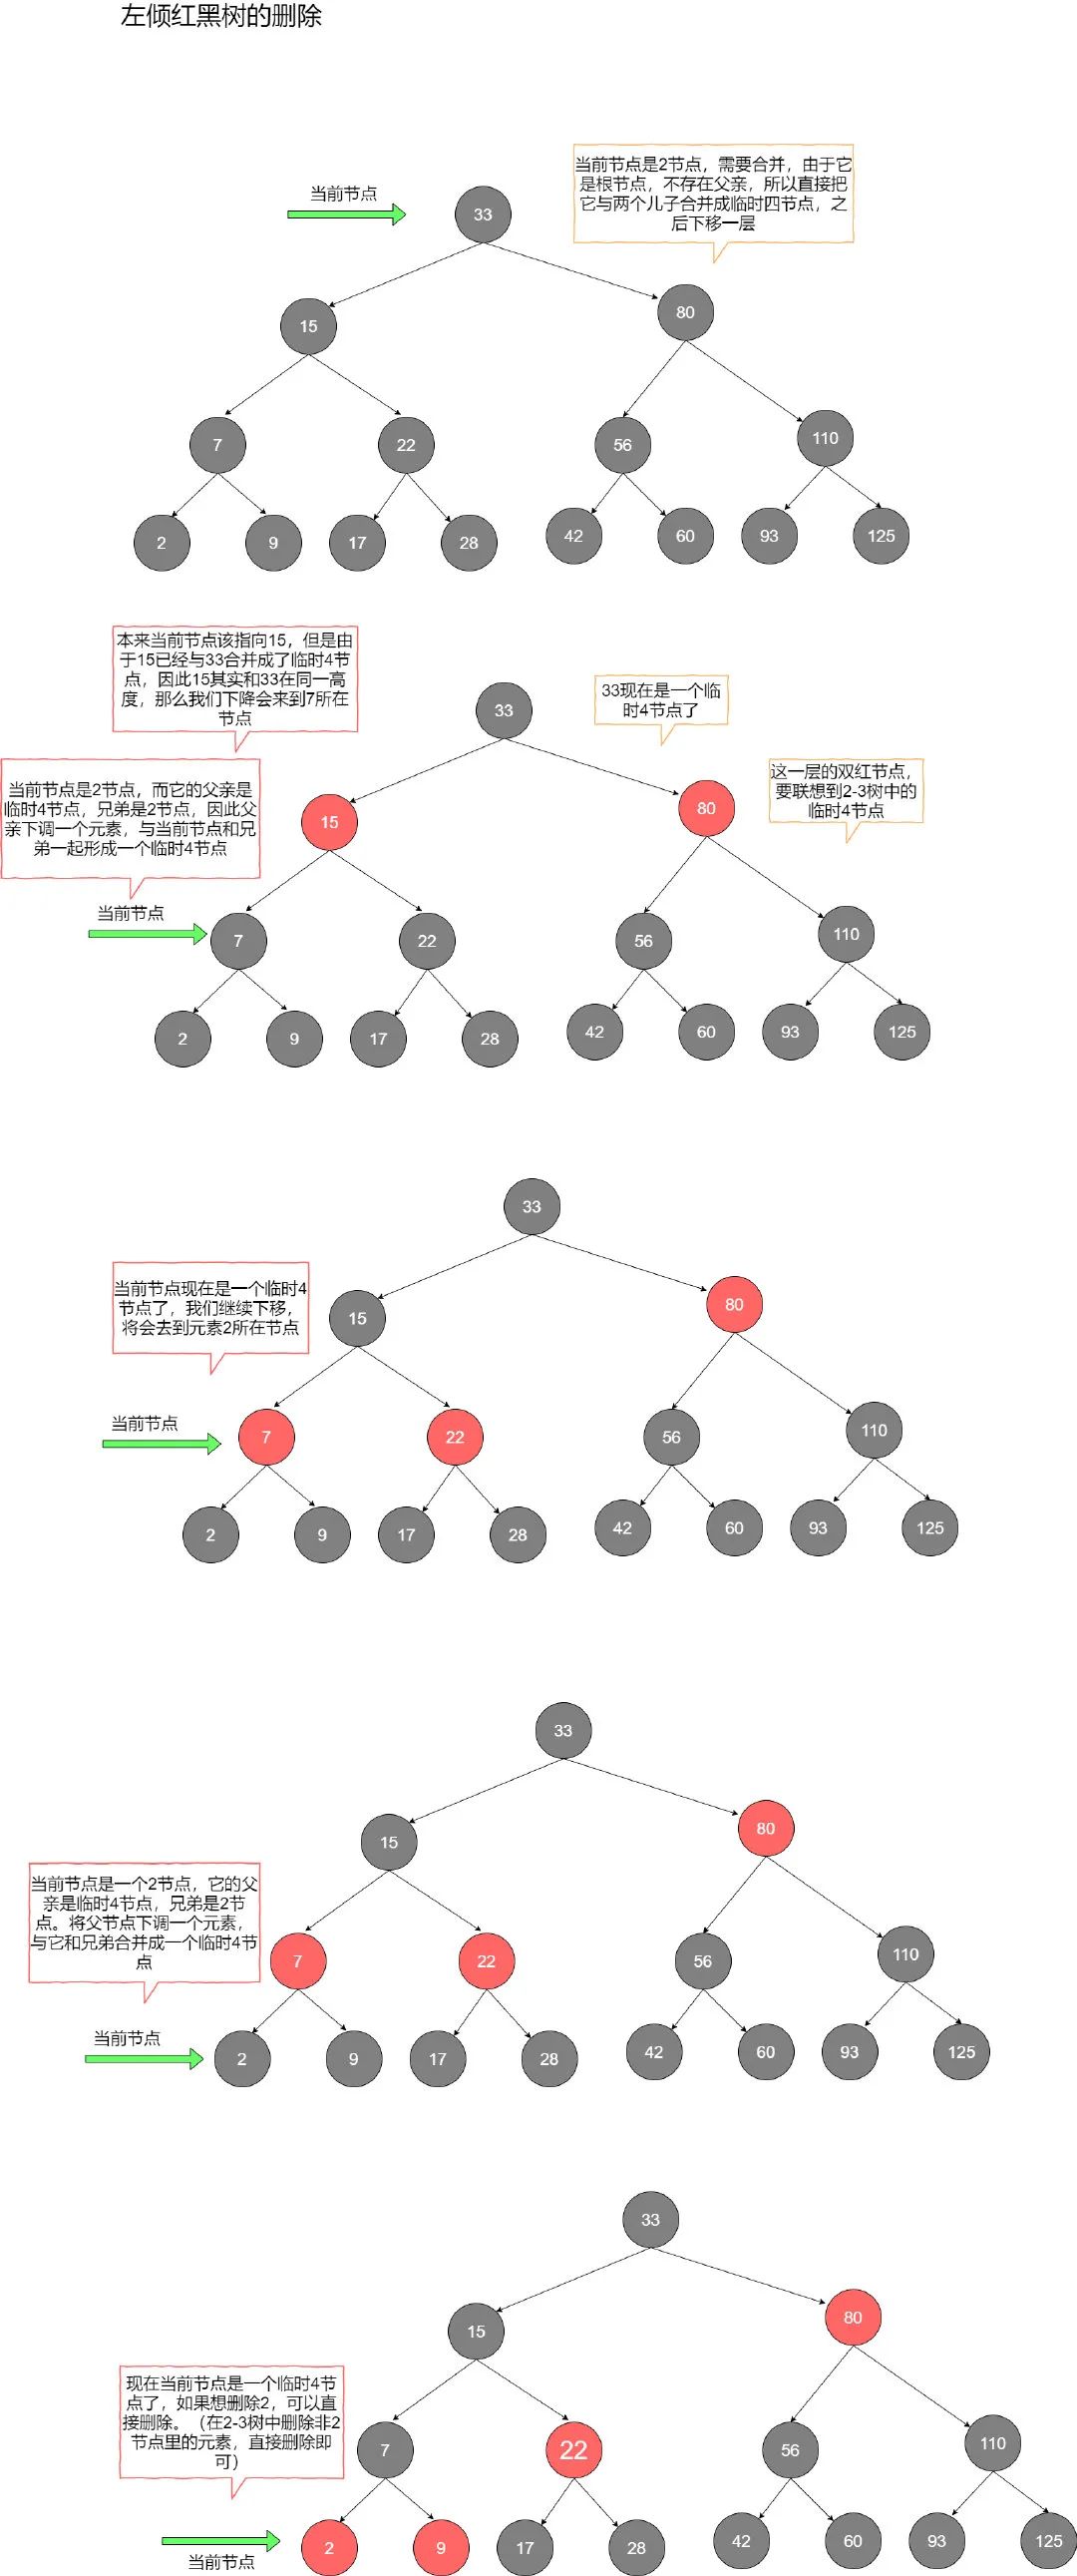 红黑树【图解】 - 图15